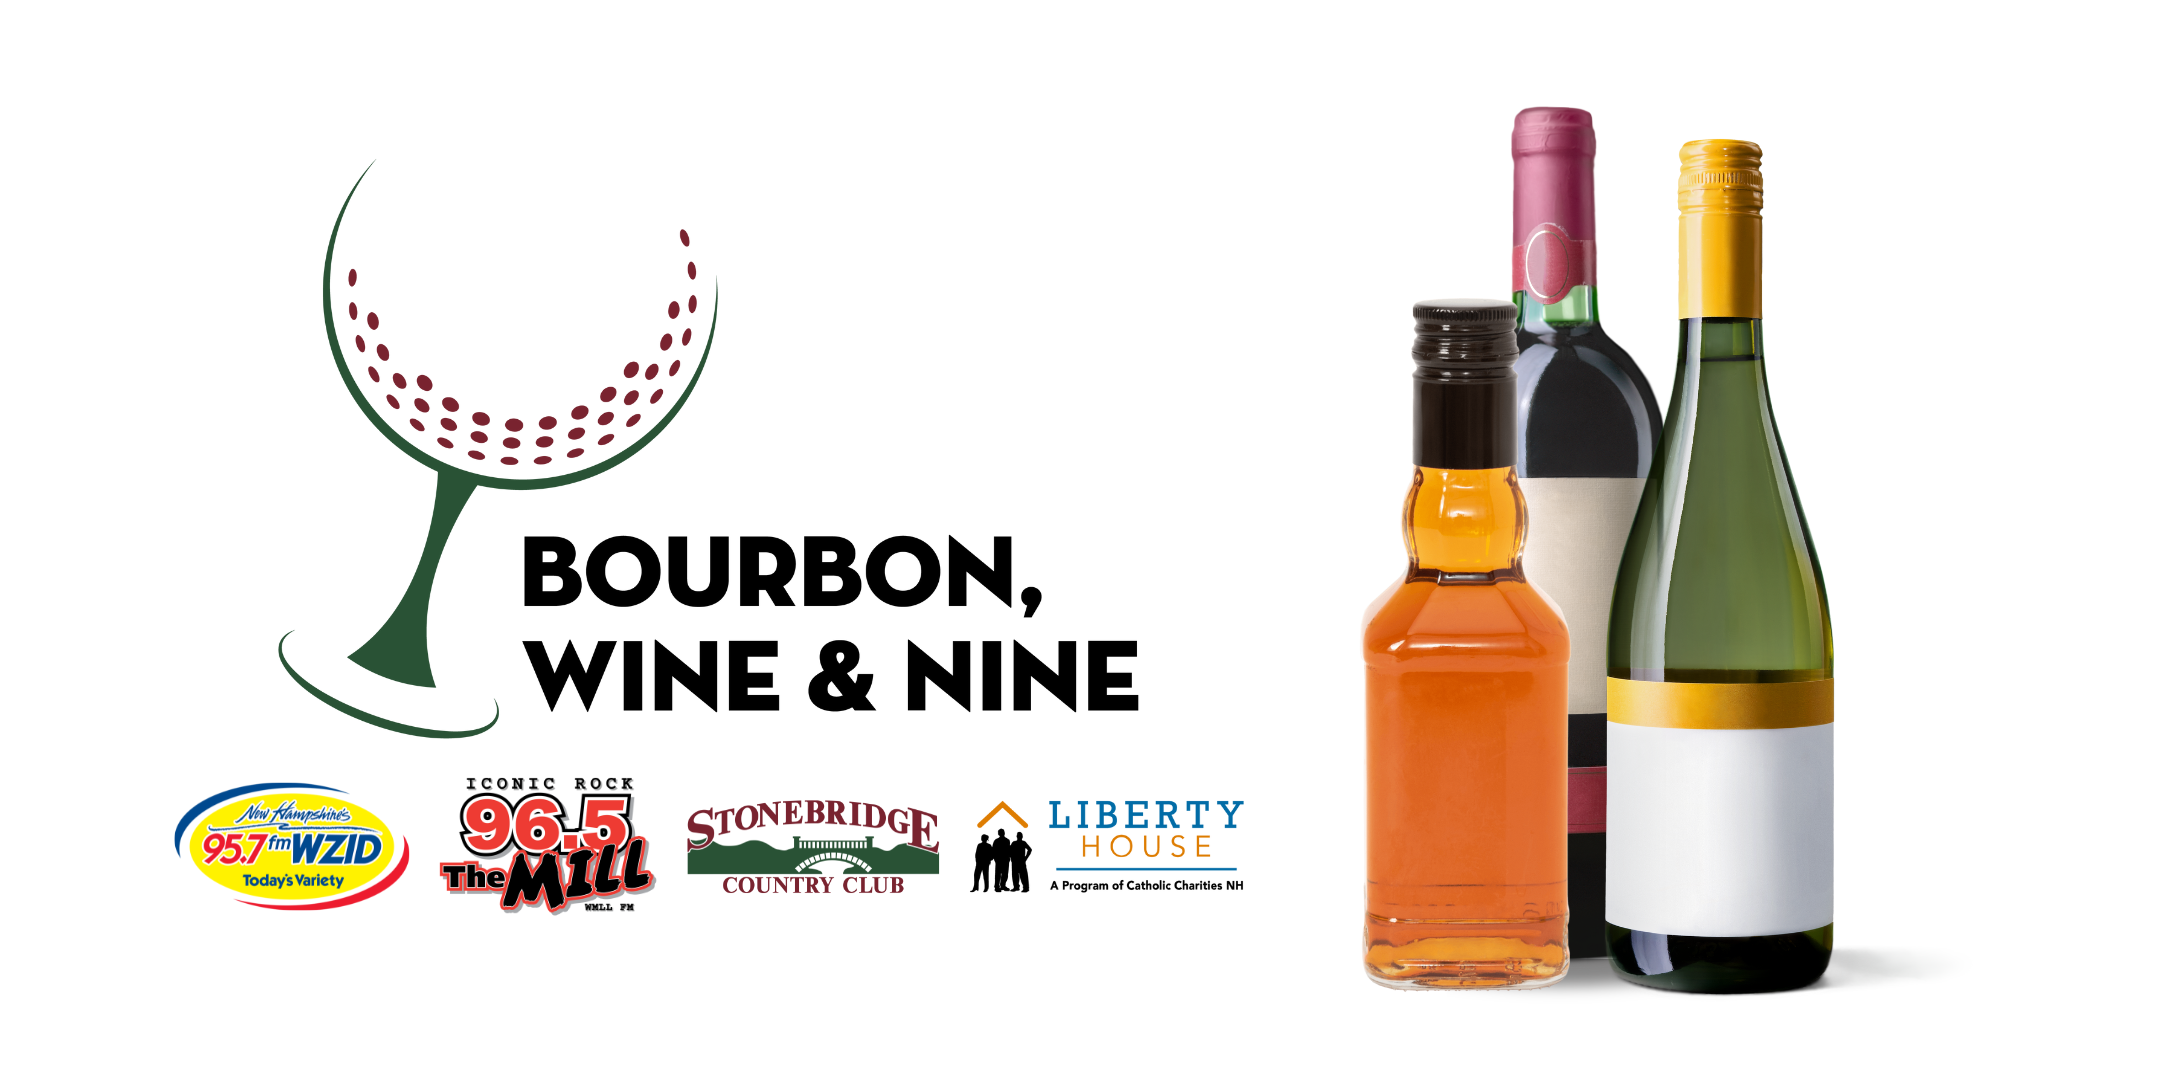 Bourbon, Wine & Nine